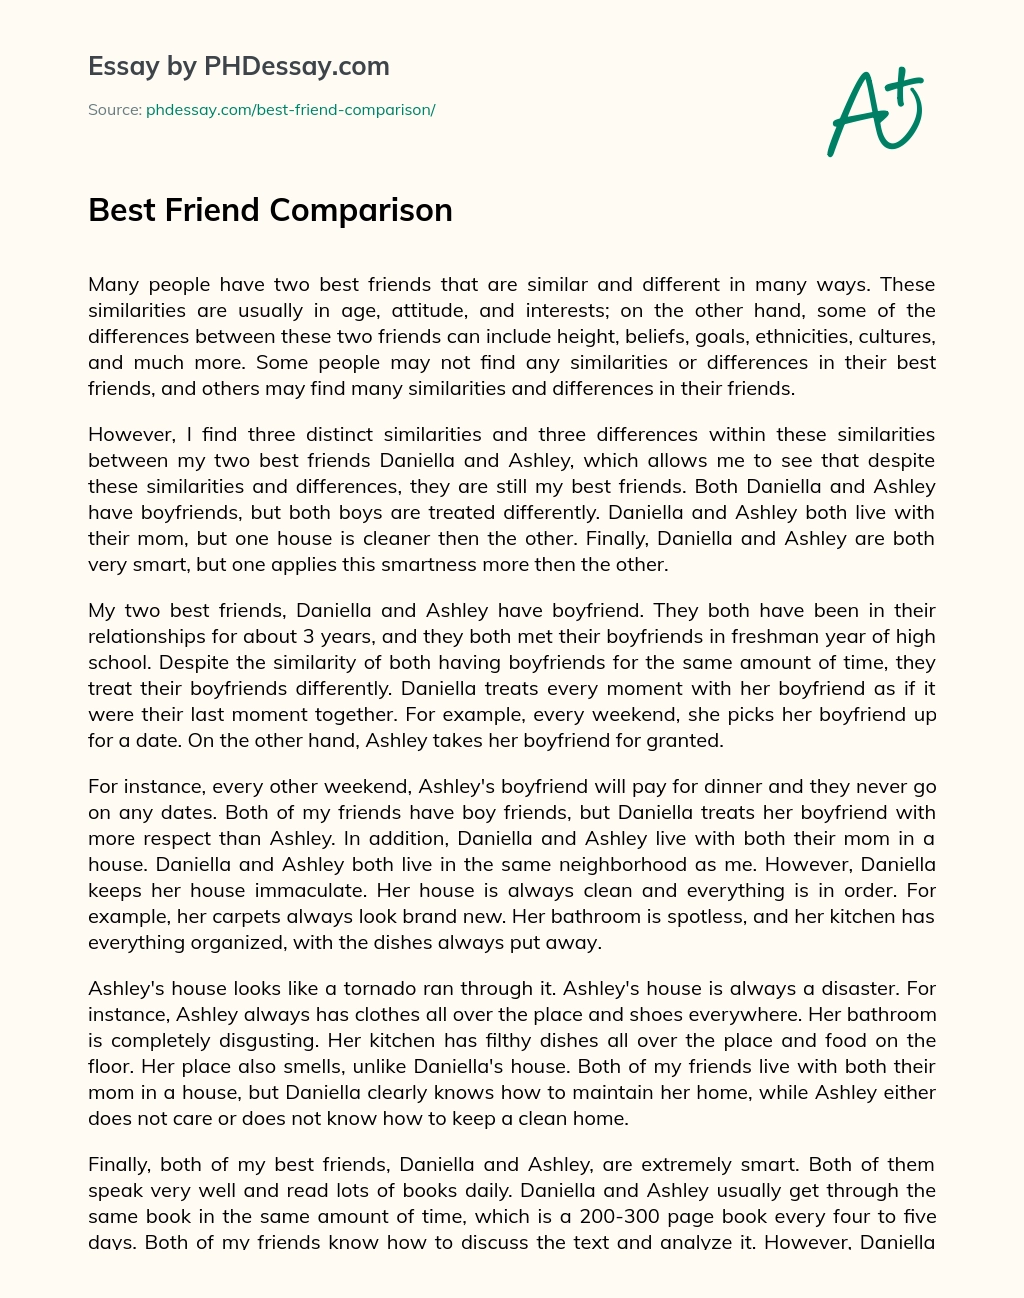 Best Friend Comparison essay